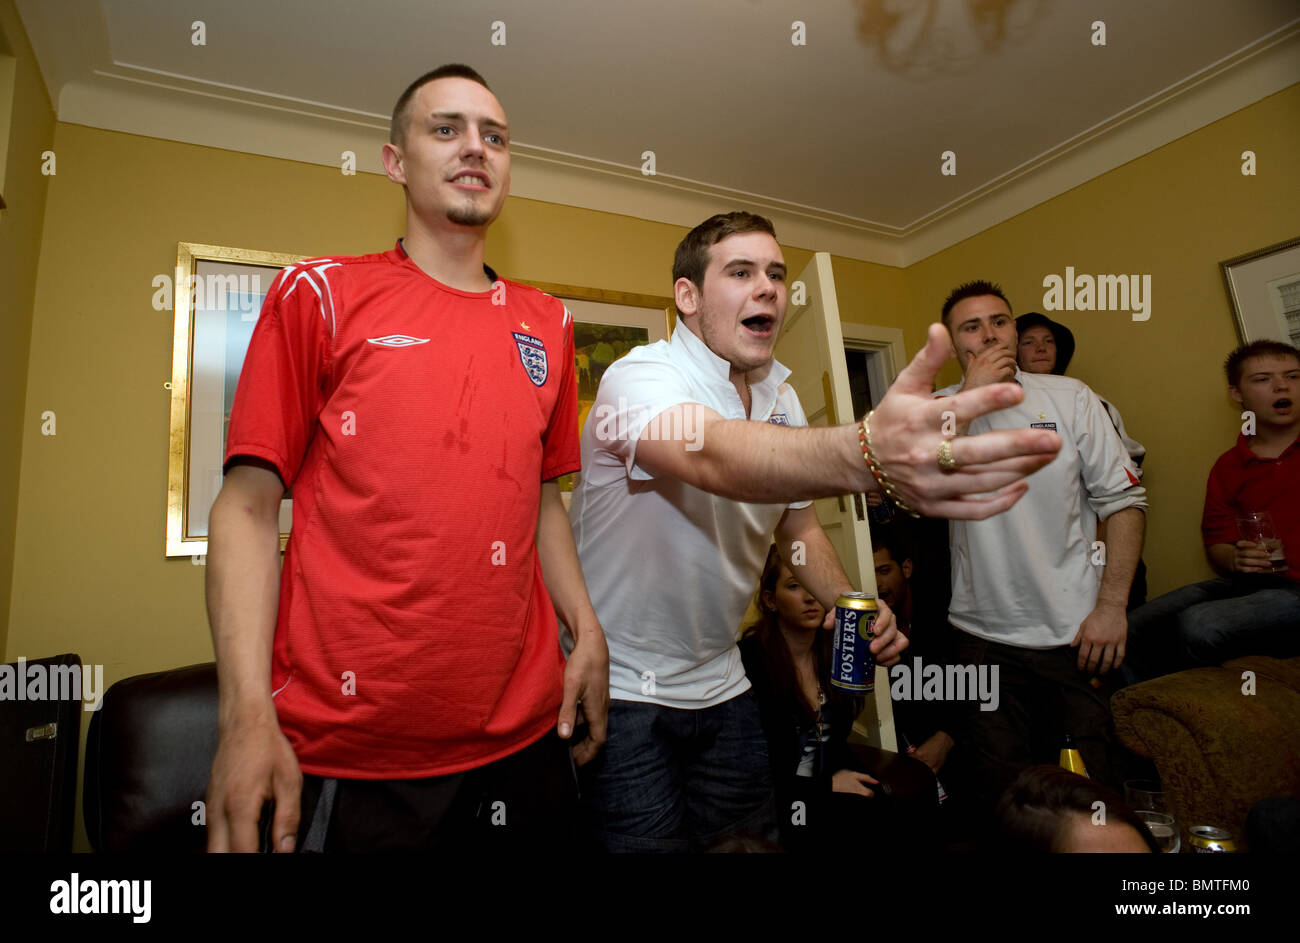 Frustriert England-Fans in einem Haus von Freunden ansehen England gegen Algerien WM-Spiel Stockfoto